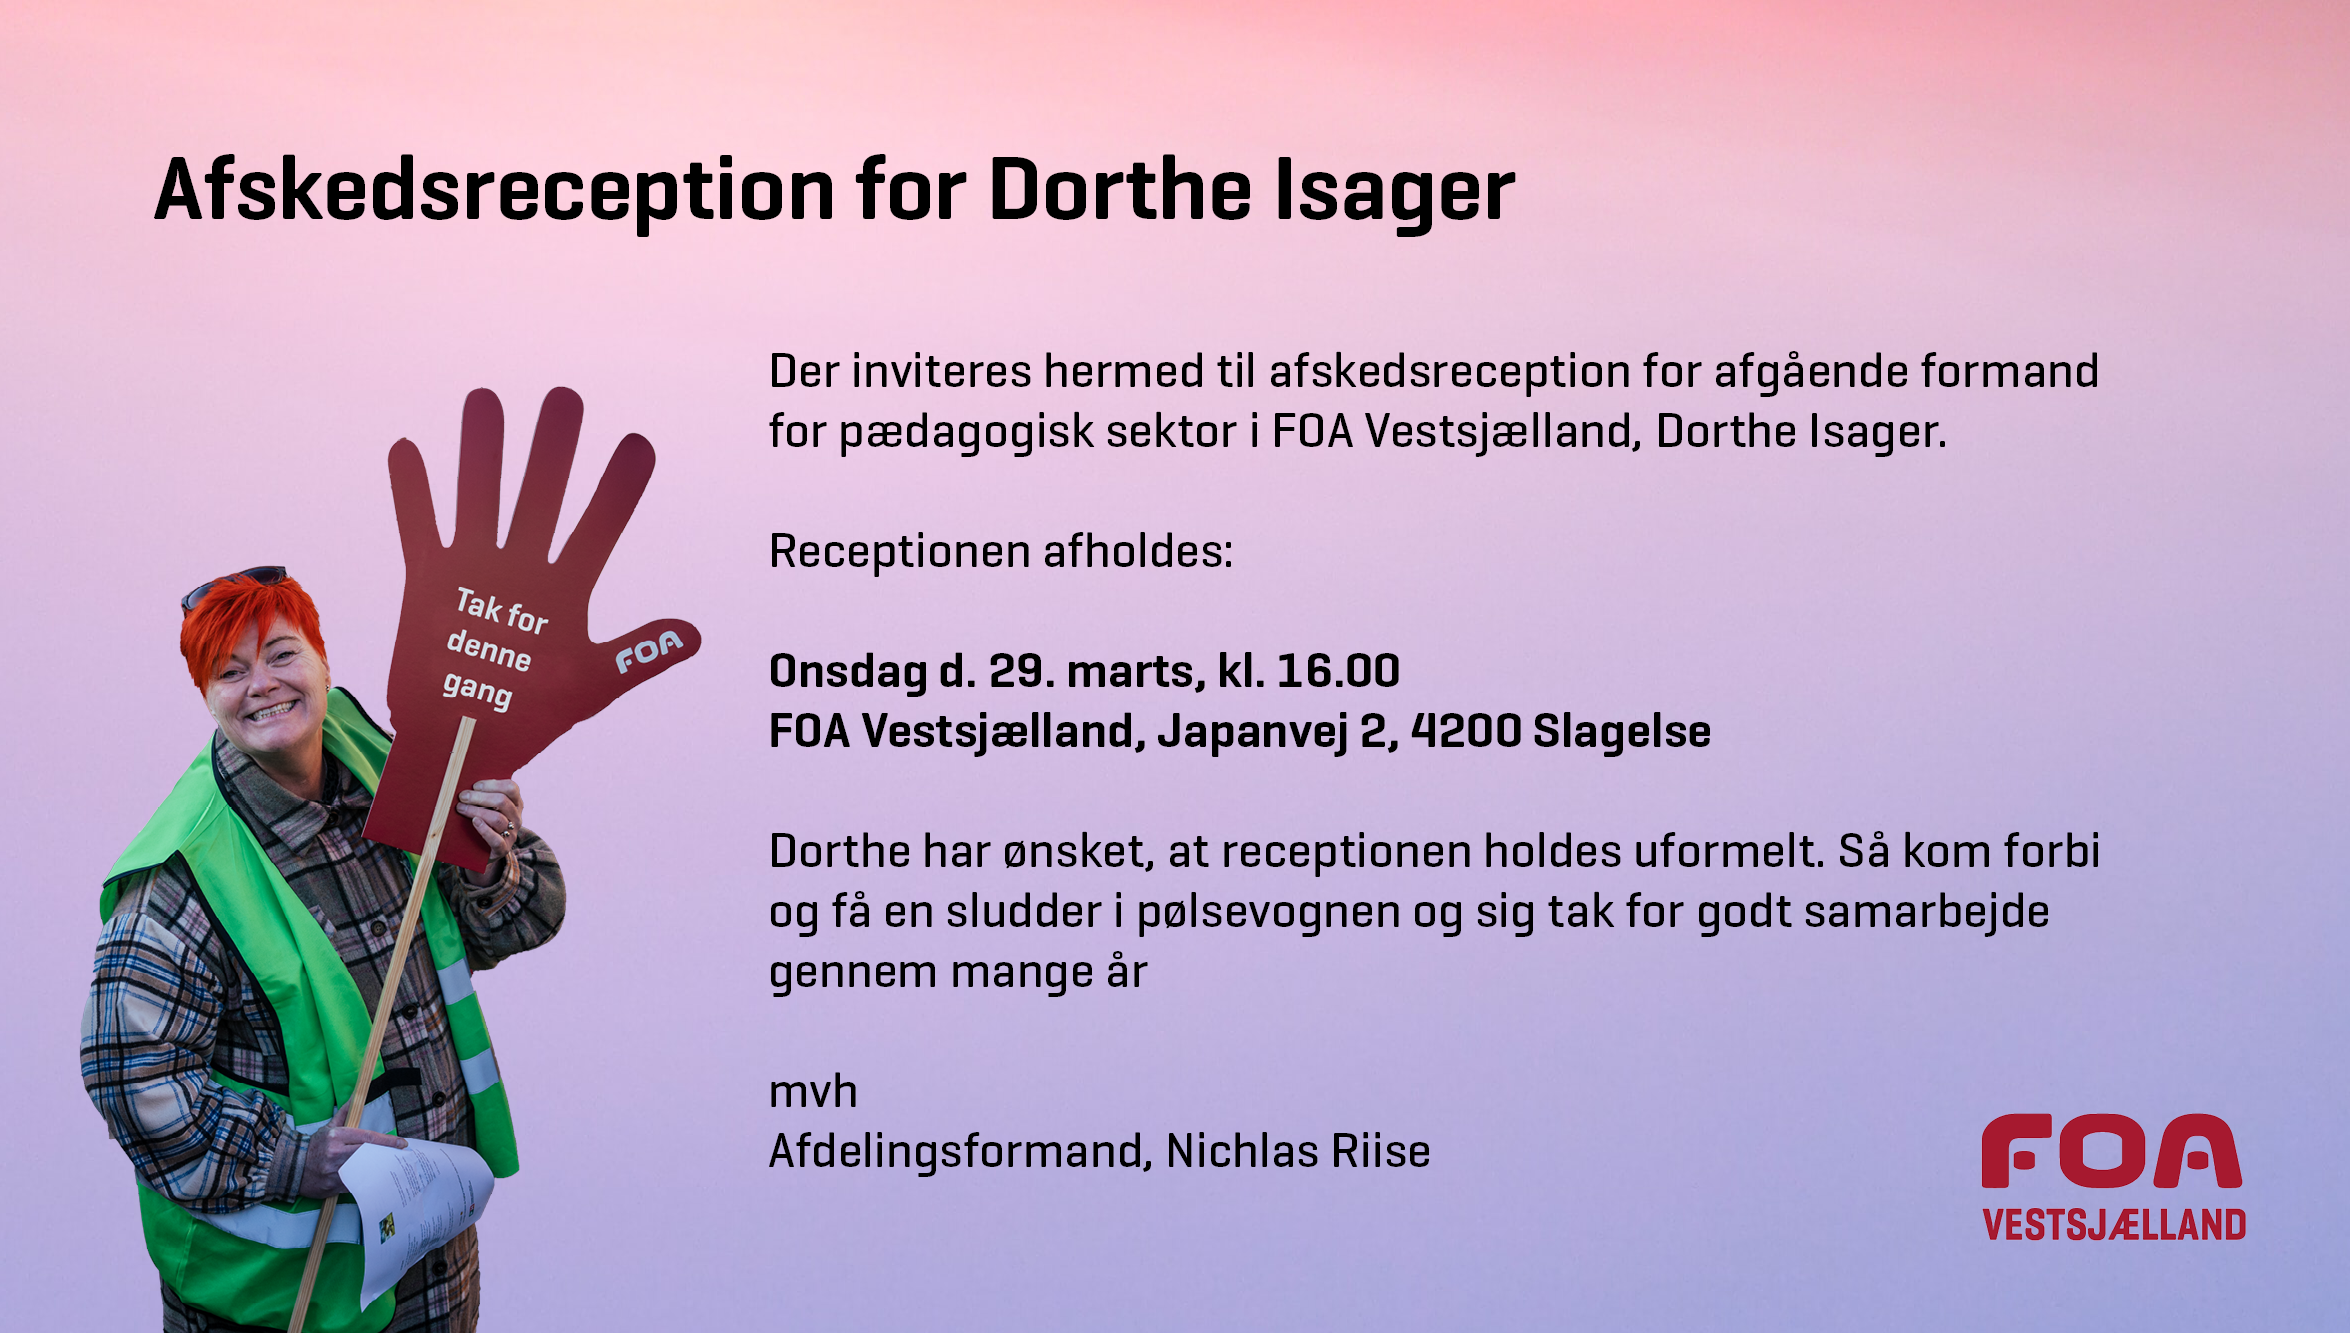 Afskedsreception Dorthe Isager 